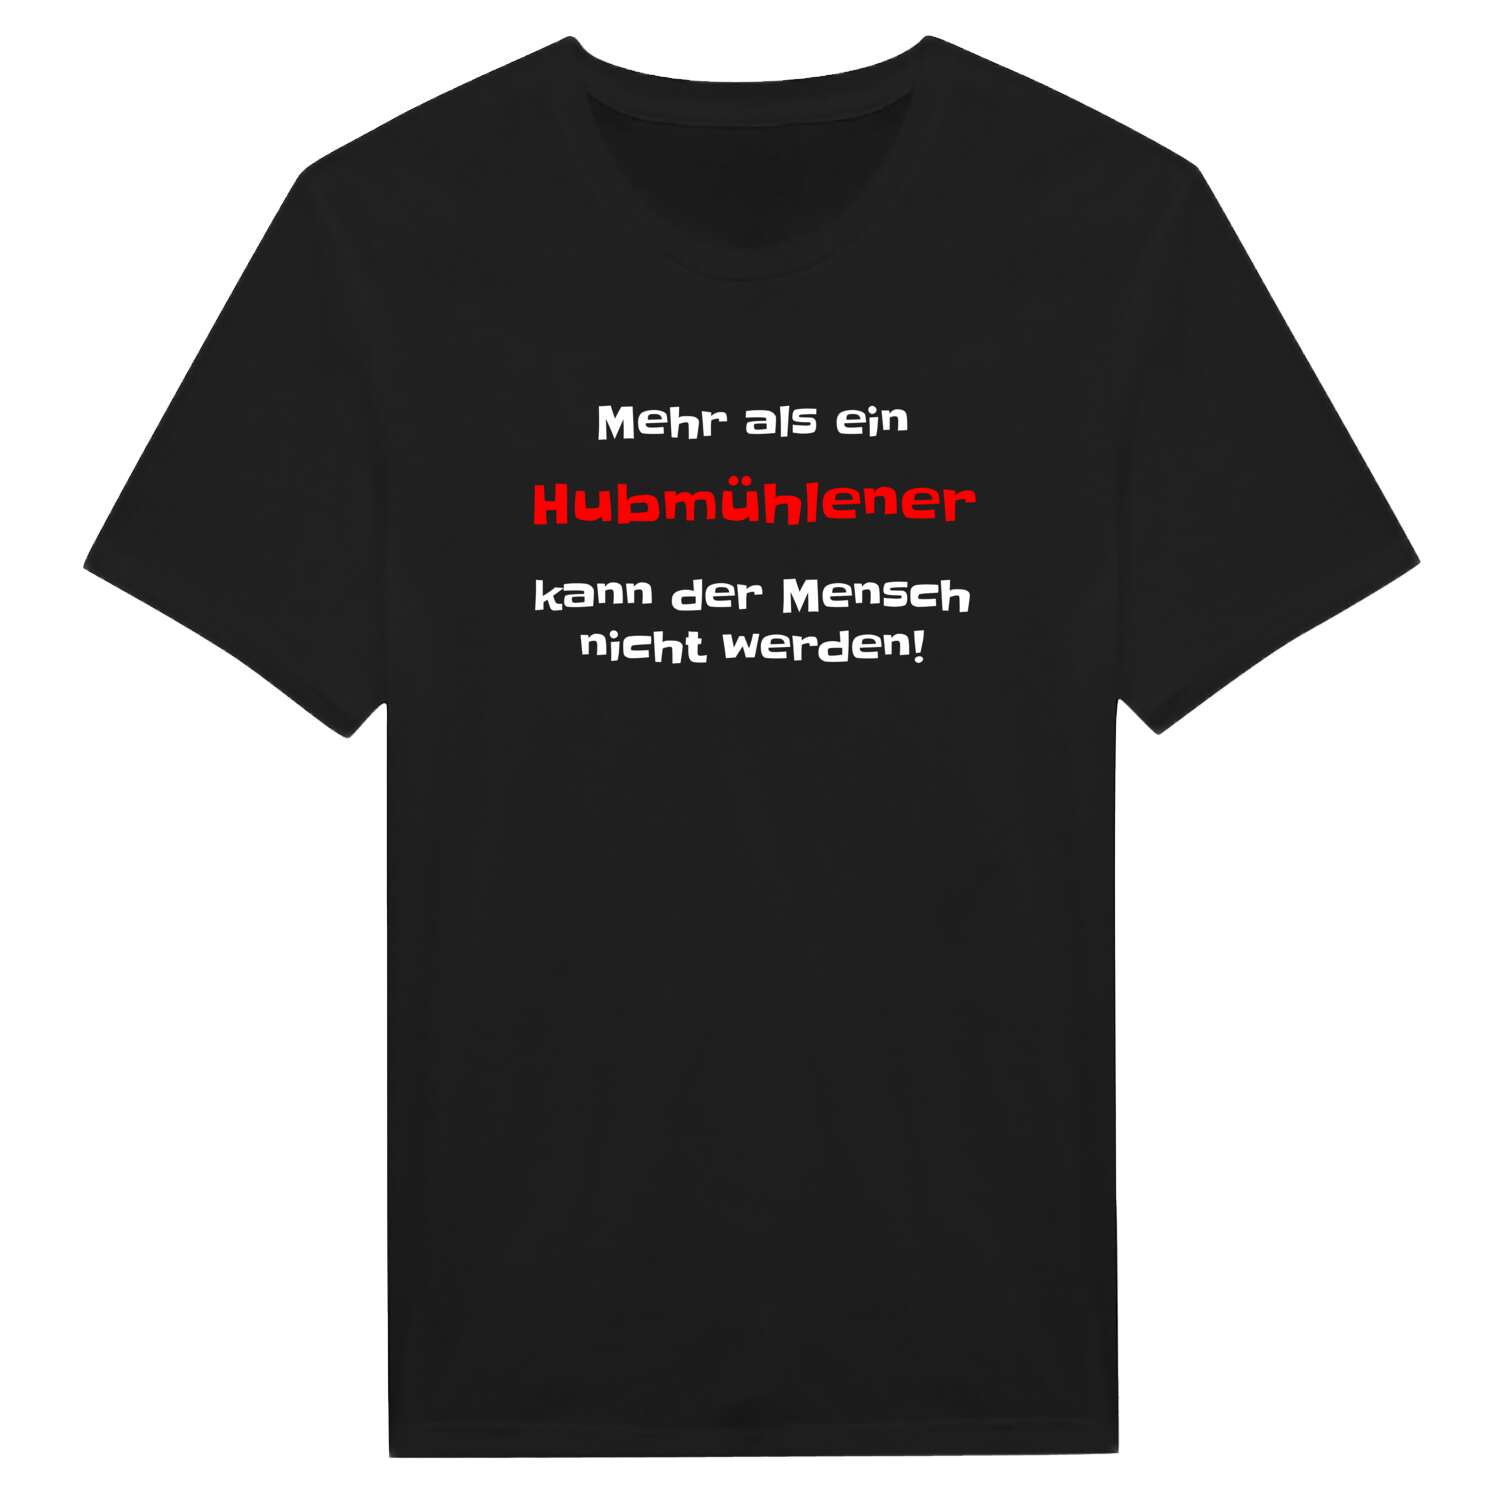 Hubmühle T-Shirt »Mehr als ein«